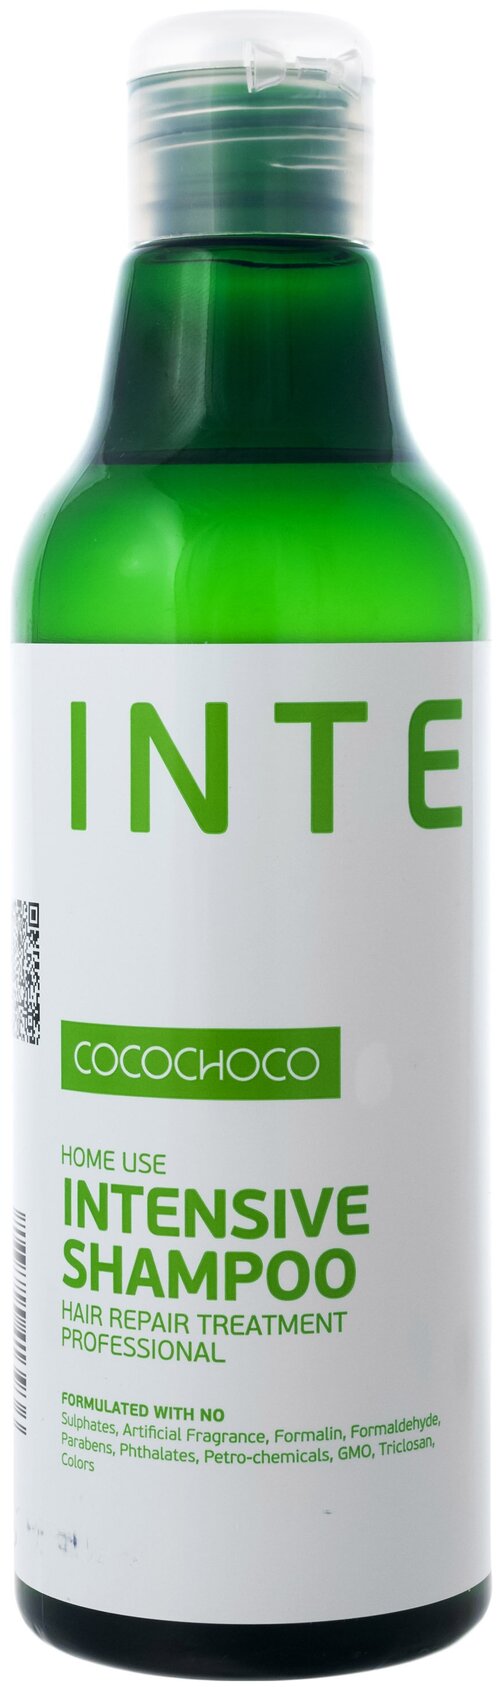 CocoChoco шампунь Intensive для интенсивного увлажнения волос, 250 мл